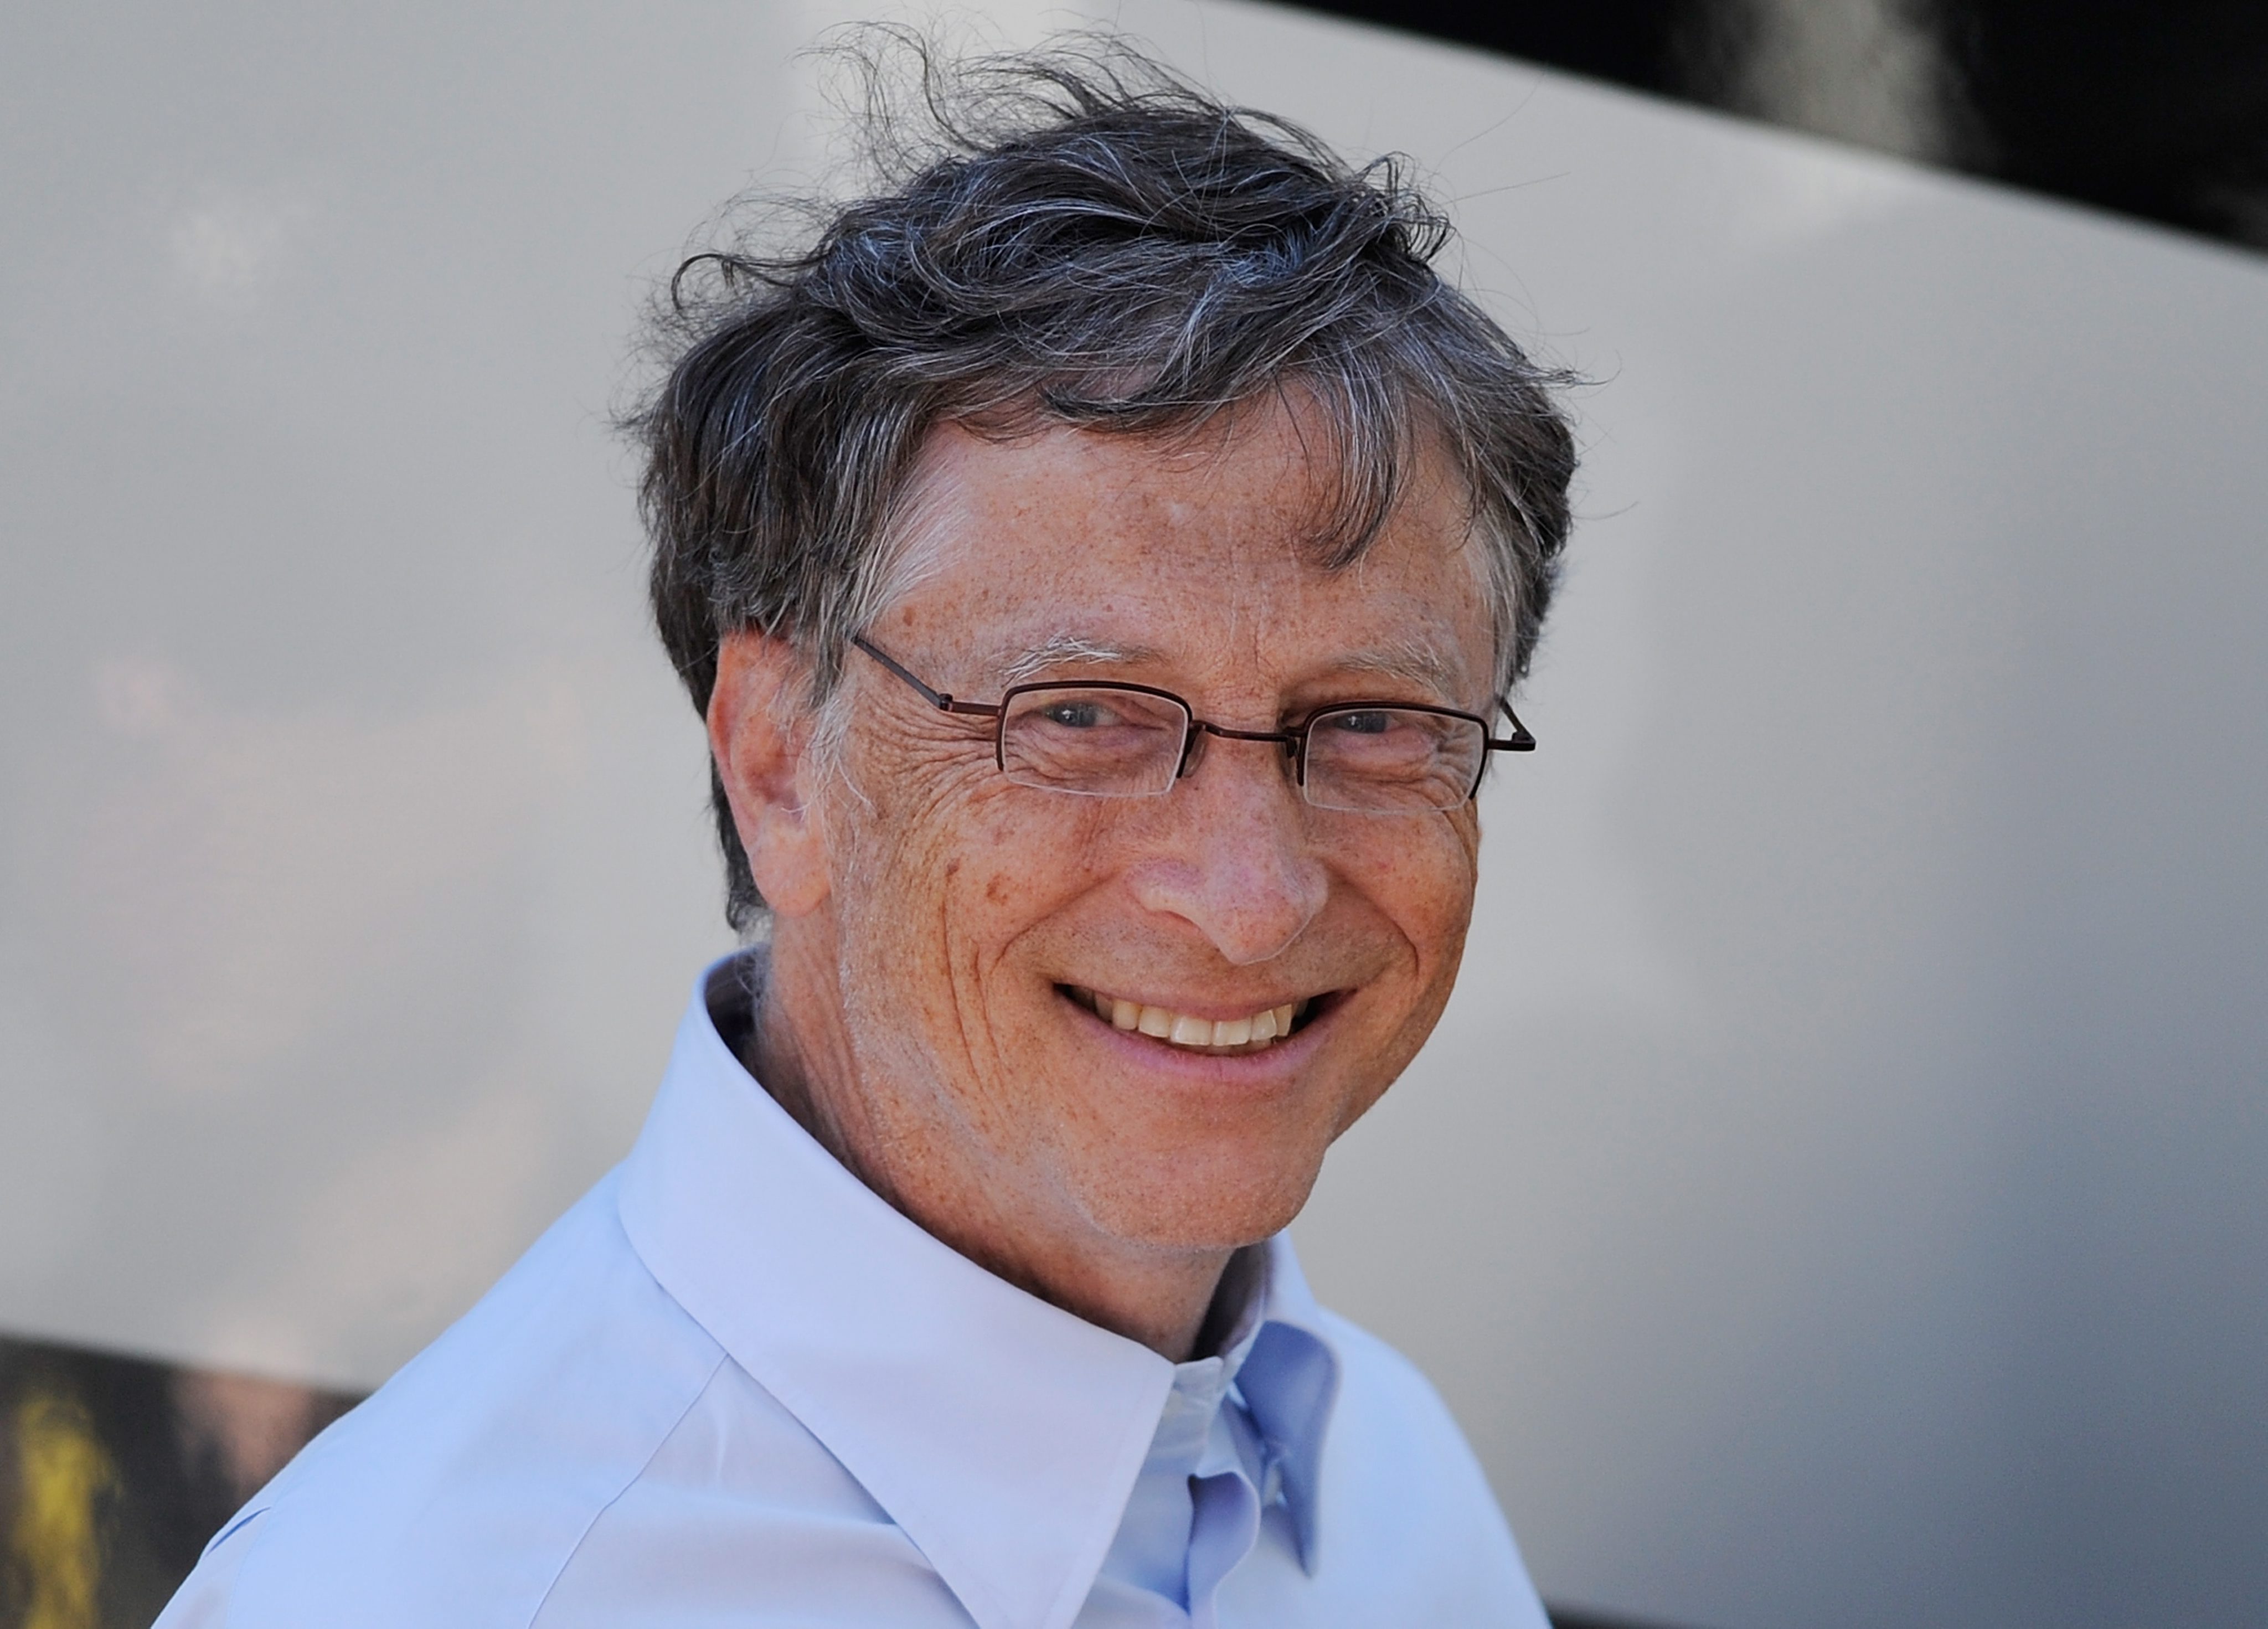 Microsoft-oprichter Bill Gates is niet alleen de rijkste Amerikaan in de afgelopen tien jaar, hij is ook weer de rijkste man op aarde. Dat meldde dinsdag het zakenblad Forbes, dat jaarlijks een ranglijst samenstelt van de allerrijksten in de Verenigde Staten. Uit de ranglijst blijkt dat de 400 rijkste Amerikanen hun vermogen in de afgelopen 10 jaar meer dan verdubbeld hebben. De top 10 van de ranglijst was het afgelopen decennium een stoelendans met steeds dezelfde deelnemers. Bill Gates, de oprichter van Microsoft, was onafgebroken de meest vermogende Amerikaan. Dit jaar is hij met een geschat vermogen van 72 miljard dollar ook weer de rijkste man op aarde. Het gemiddelde vermogen van de miljardairs op de lijst bedraagt 5 miljard dollar. Onder de 400 rijksten zijn 48 vrouwen. De gemiddelde leeftijd is 66 jaar. David Rockefeller is met 98 jaar de oudste op de ranglijst. De jongste is Dustin Moskovic, de 29-jarige mede-oprichter van Facebook.